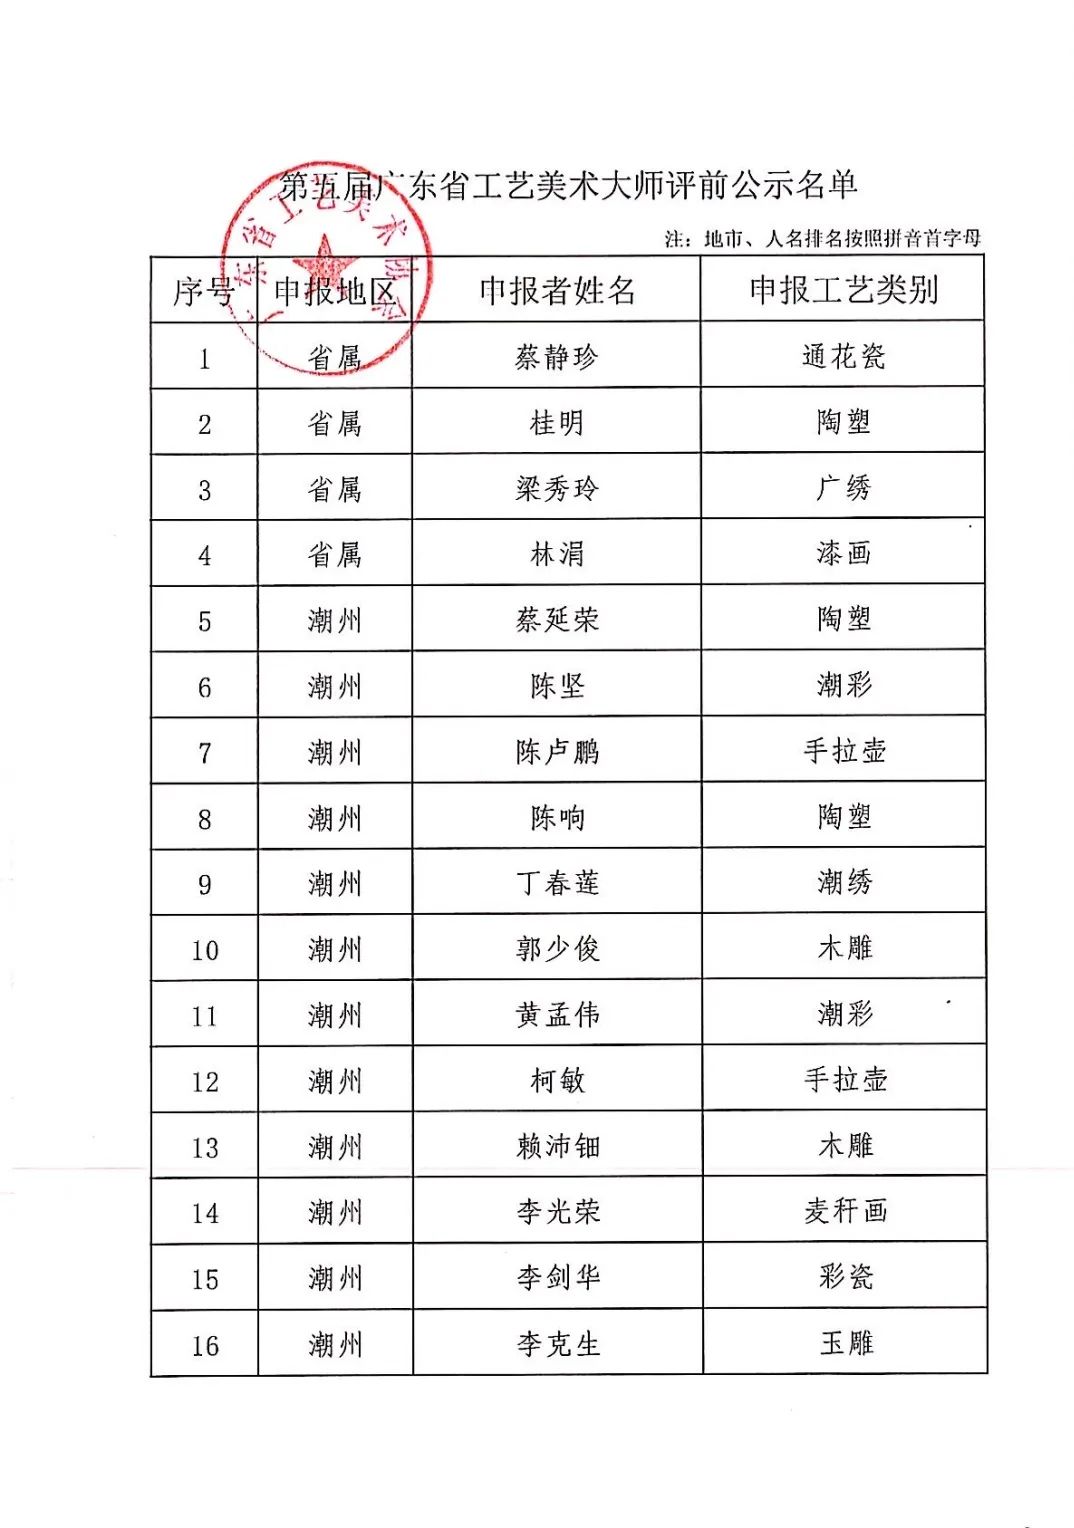 关于第五届广东省工艺美术大师申报人员的评前公示 (3).jpg